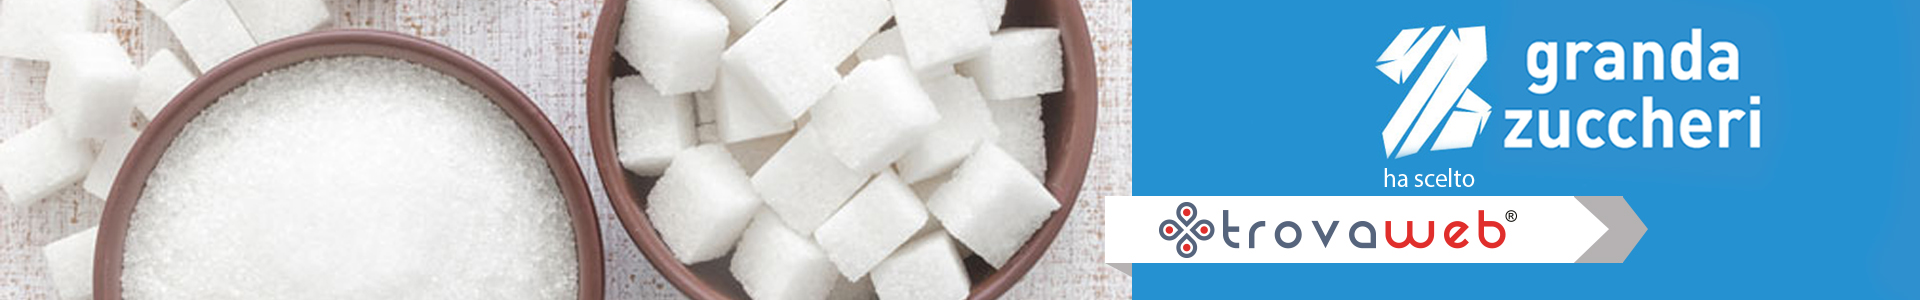 Granda Zuccheri - ingrosso Zucchero per Industria